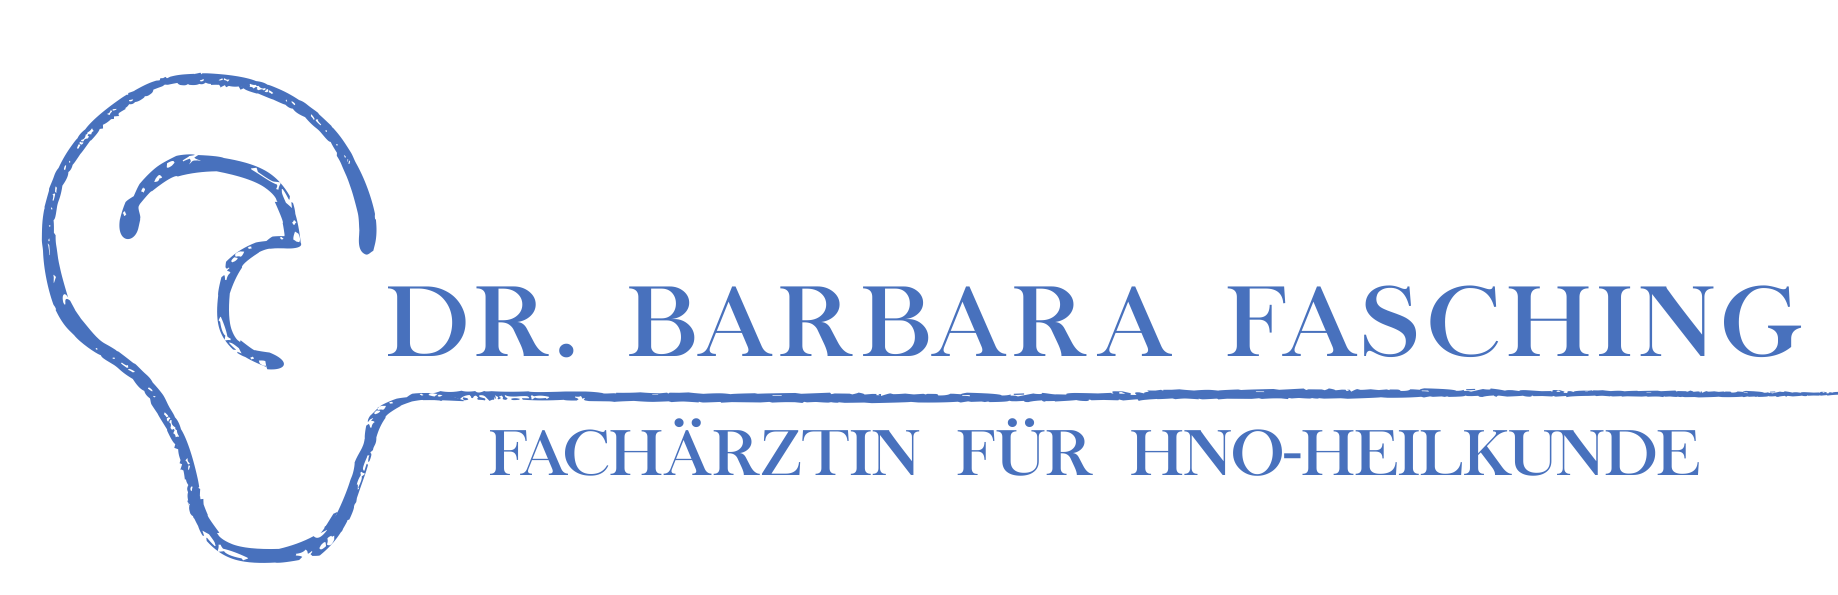 Dr. Barbara Fasching blaues Logo